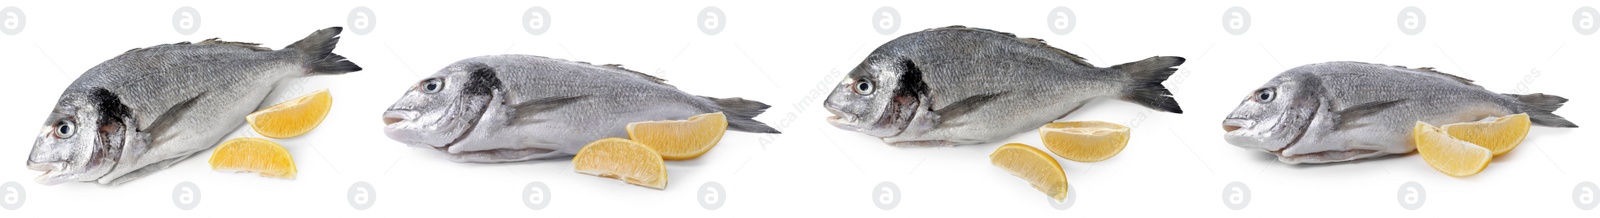 Image of Raw dorada fish and lemon isolated on white, set